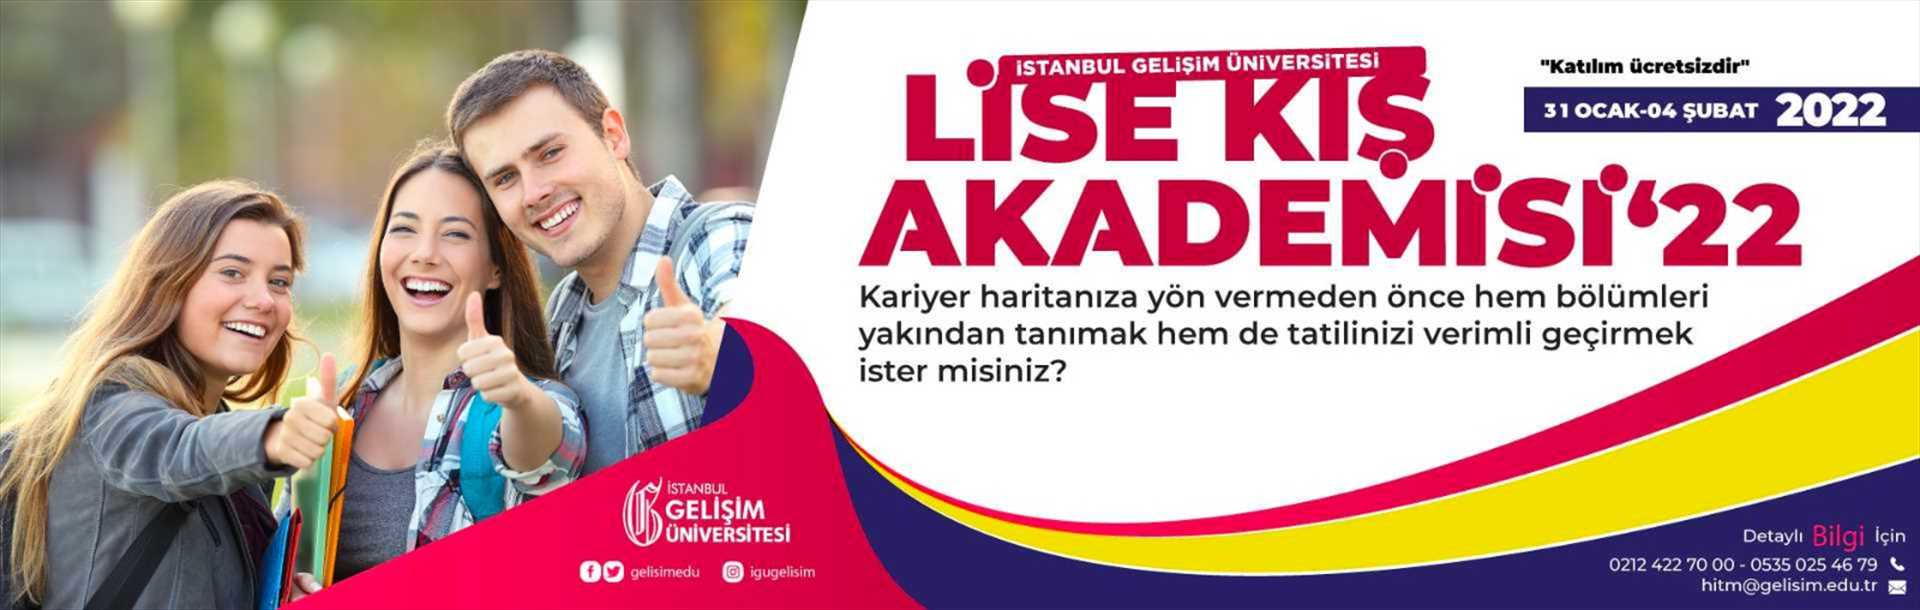 İstanbul Gelişim Üniversitesi Lise Kış Akademisi - 3